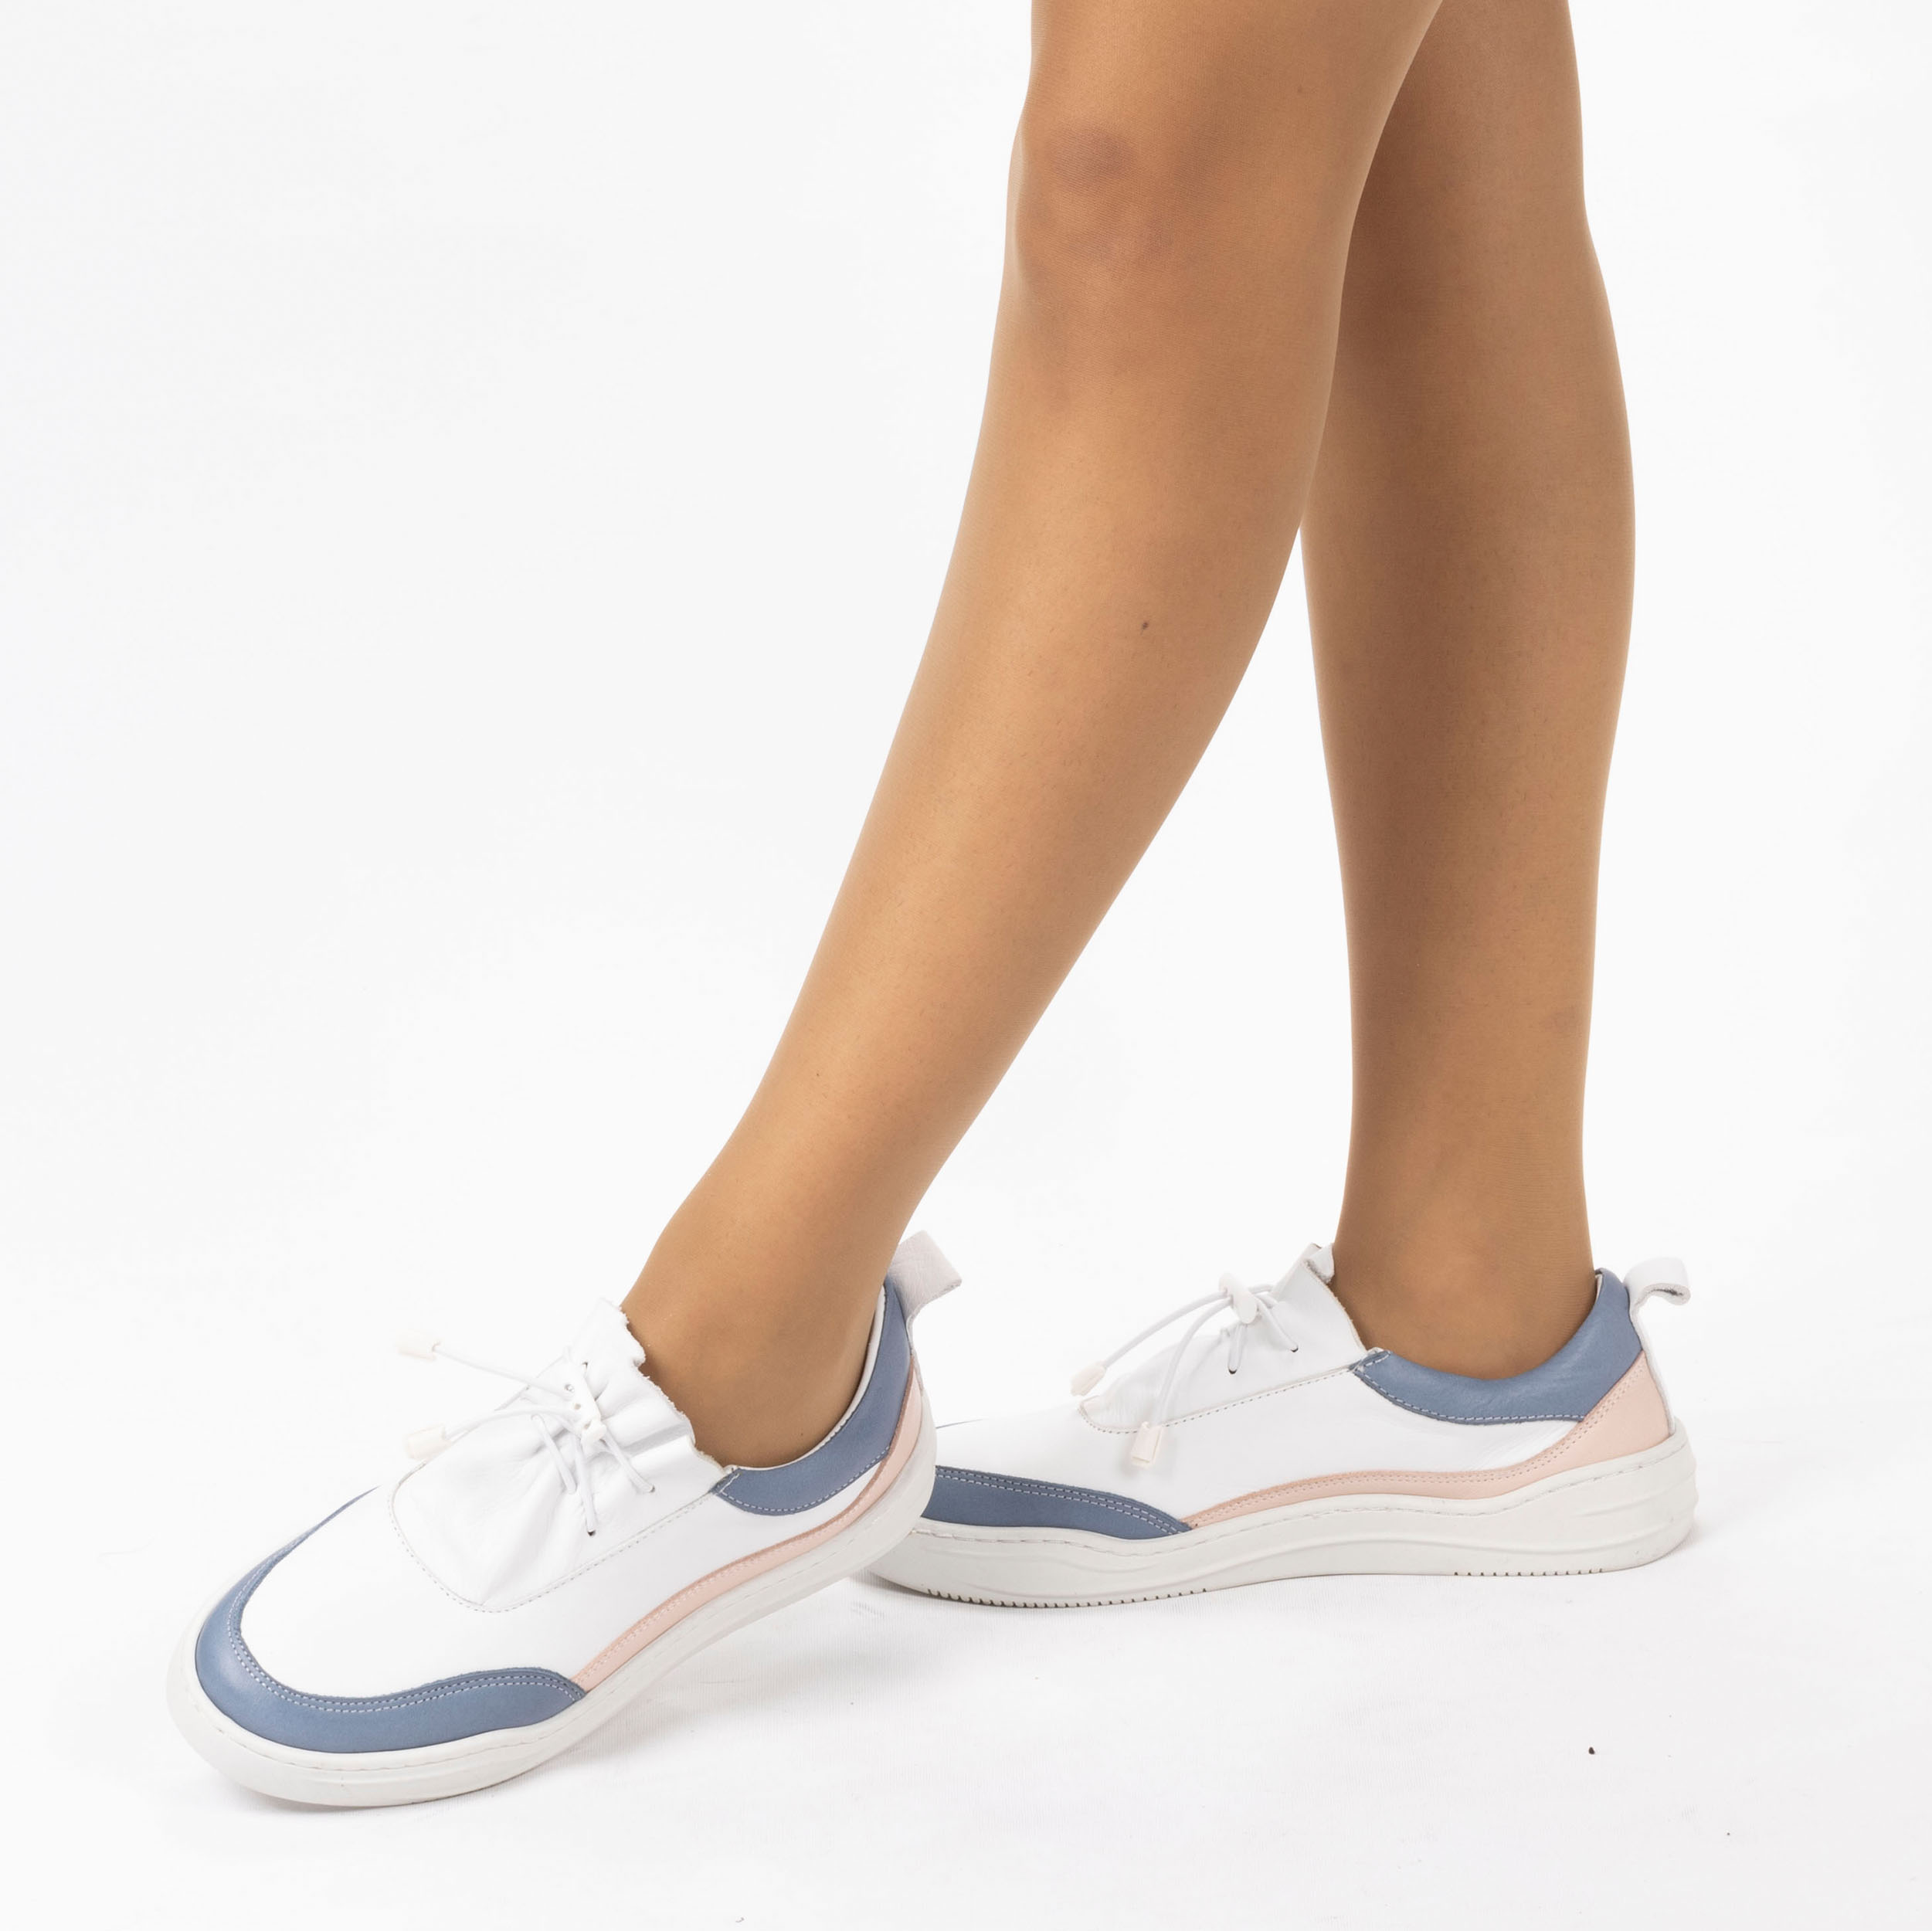 Kadın Hakiki Deri  Günlük Spor Ayakkabı / Sneakers, Renk: Mavi - Pembe, Beden: 39